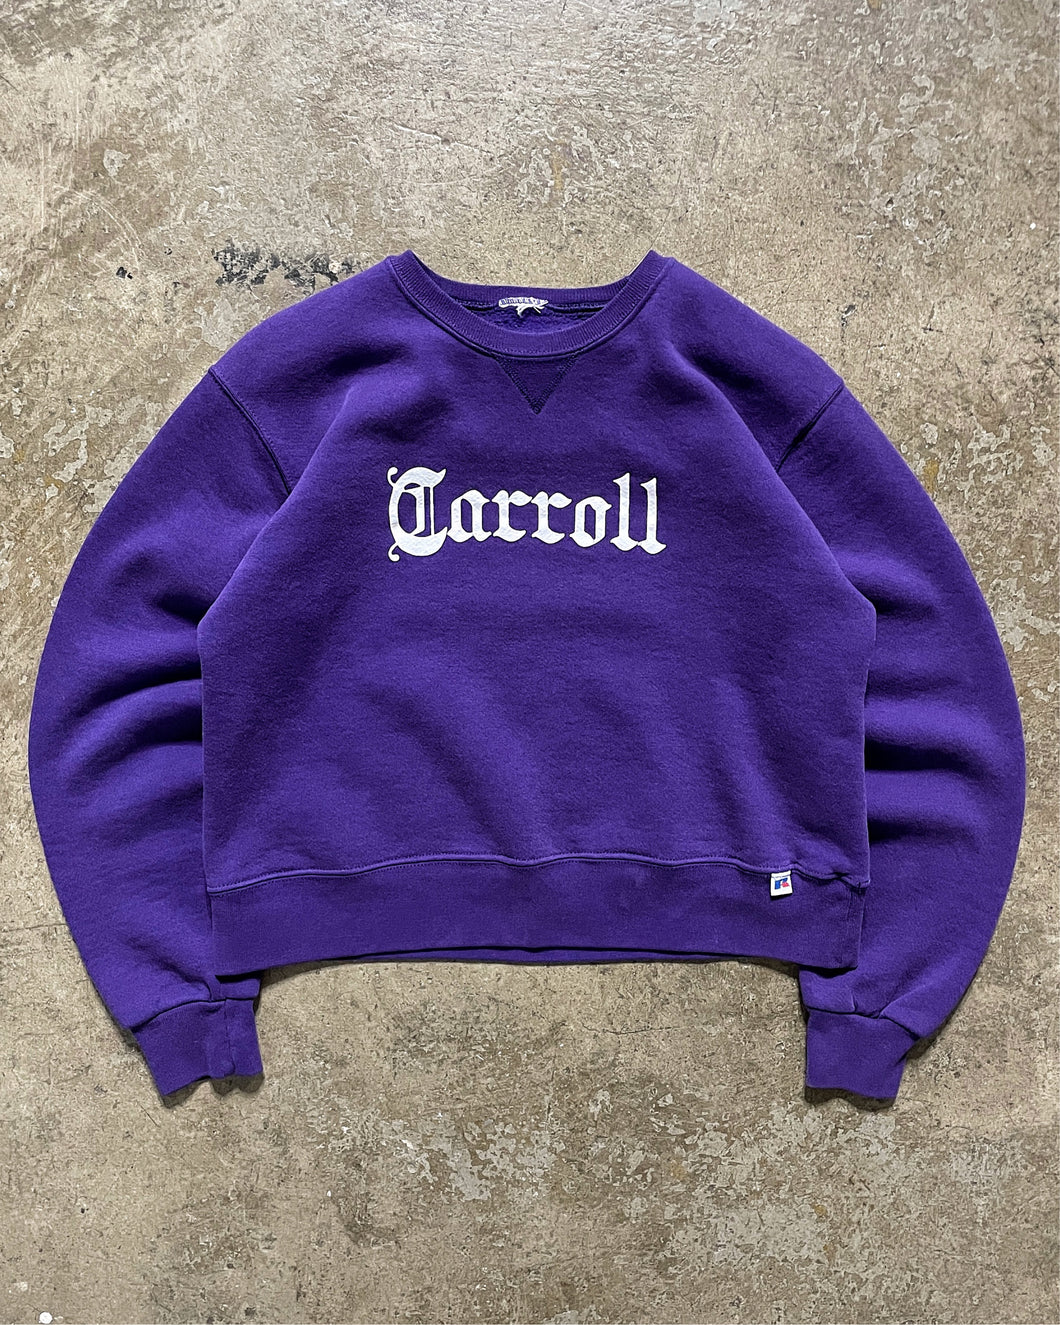 CROPPED “CARROLL” PURPLE RUSSELL SWEATSHIRT - 1990S